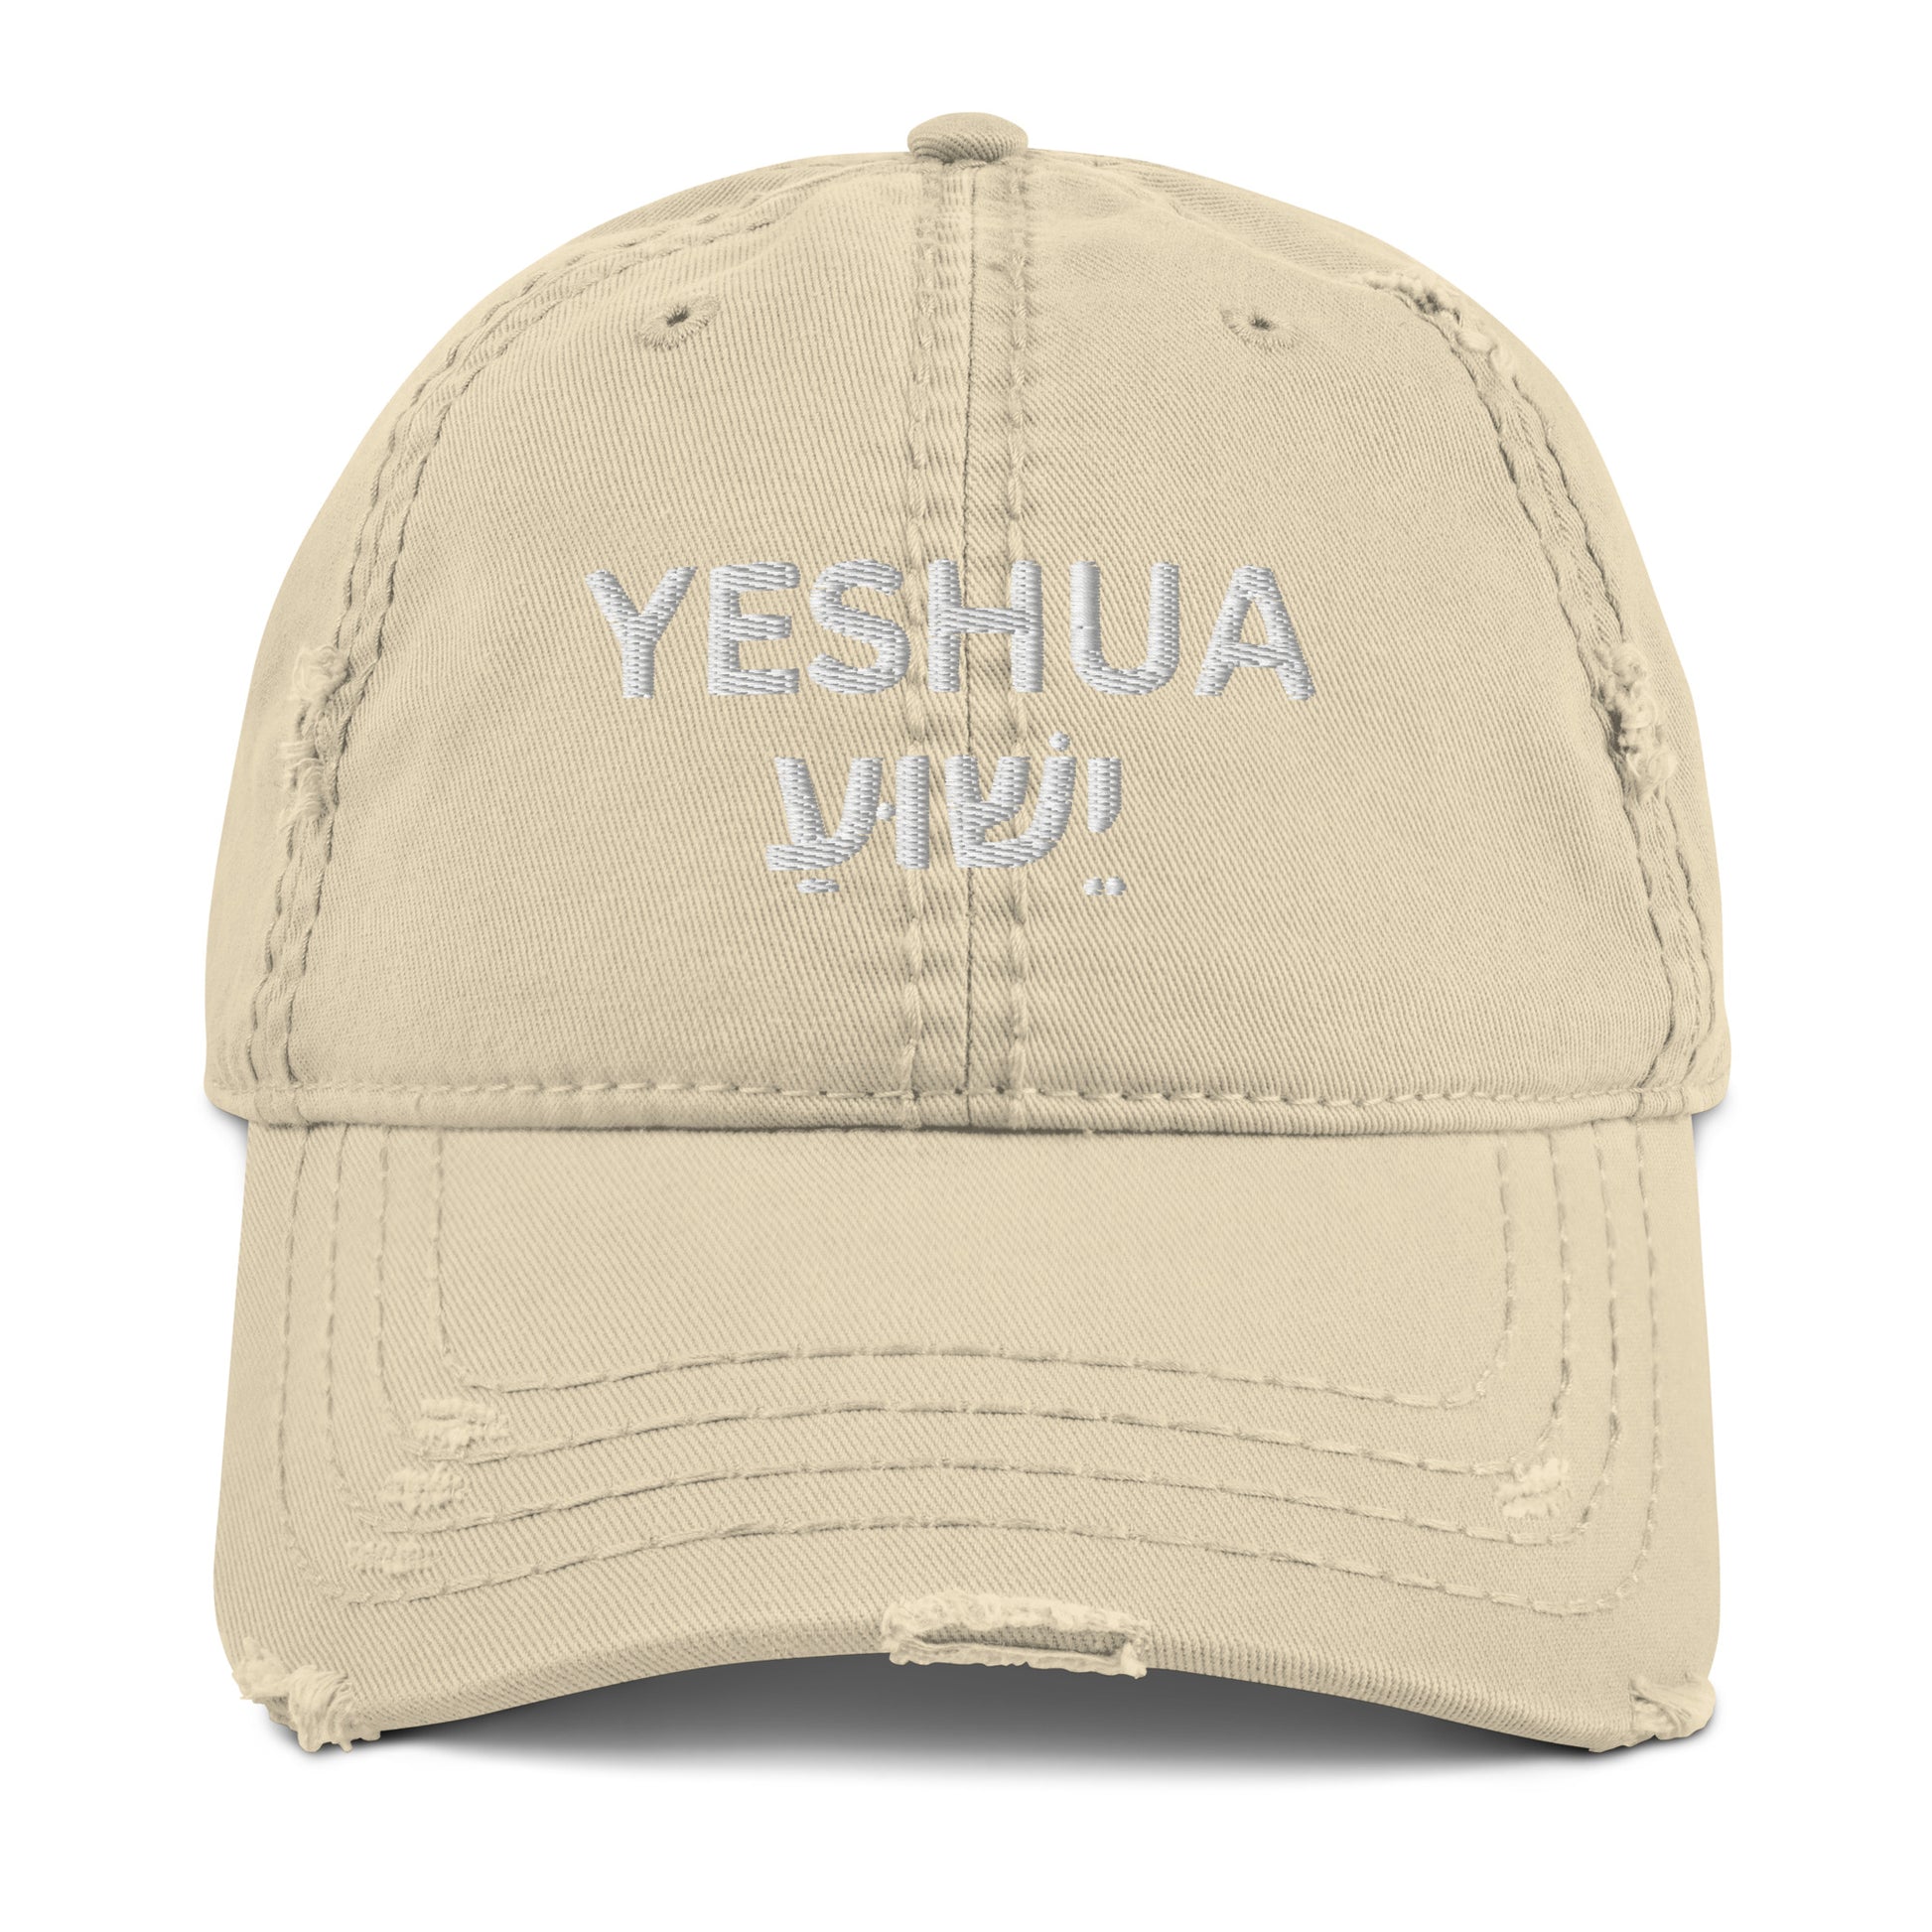 Distressed "Yeshua" Dad Hat (Unisex) - Humble & Faithful Co.